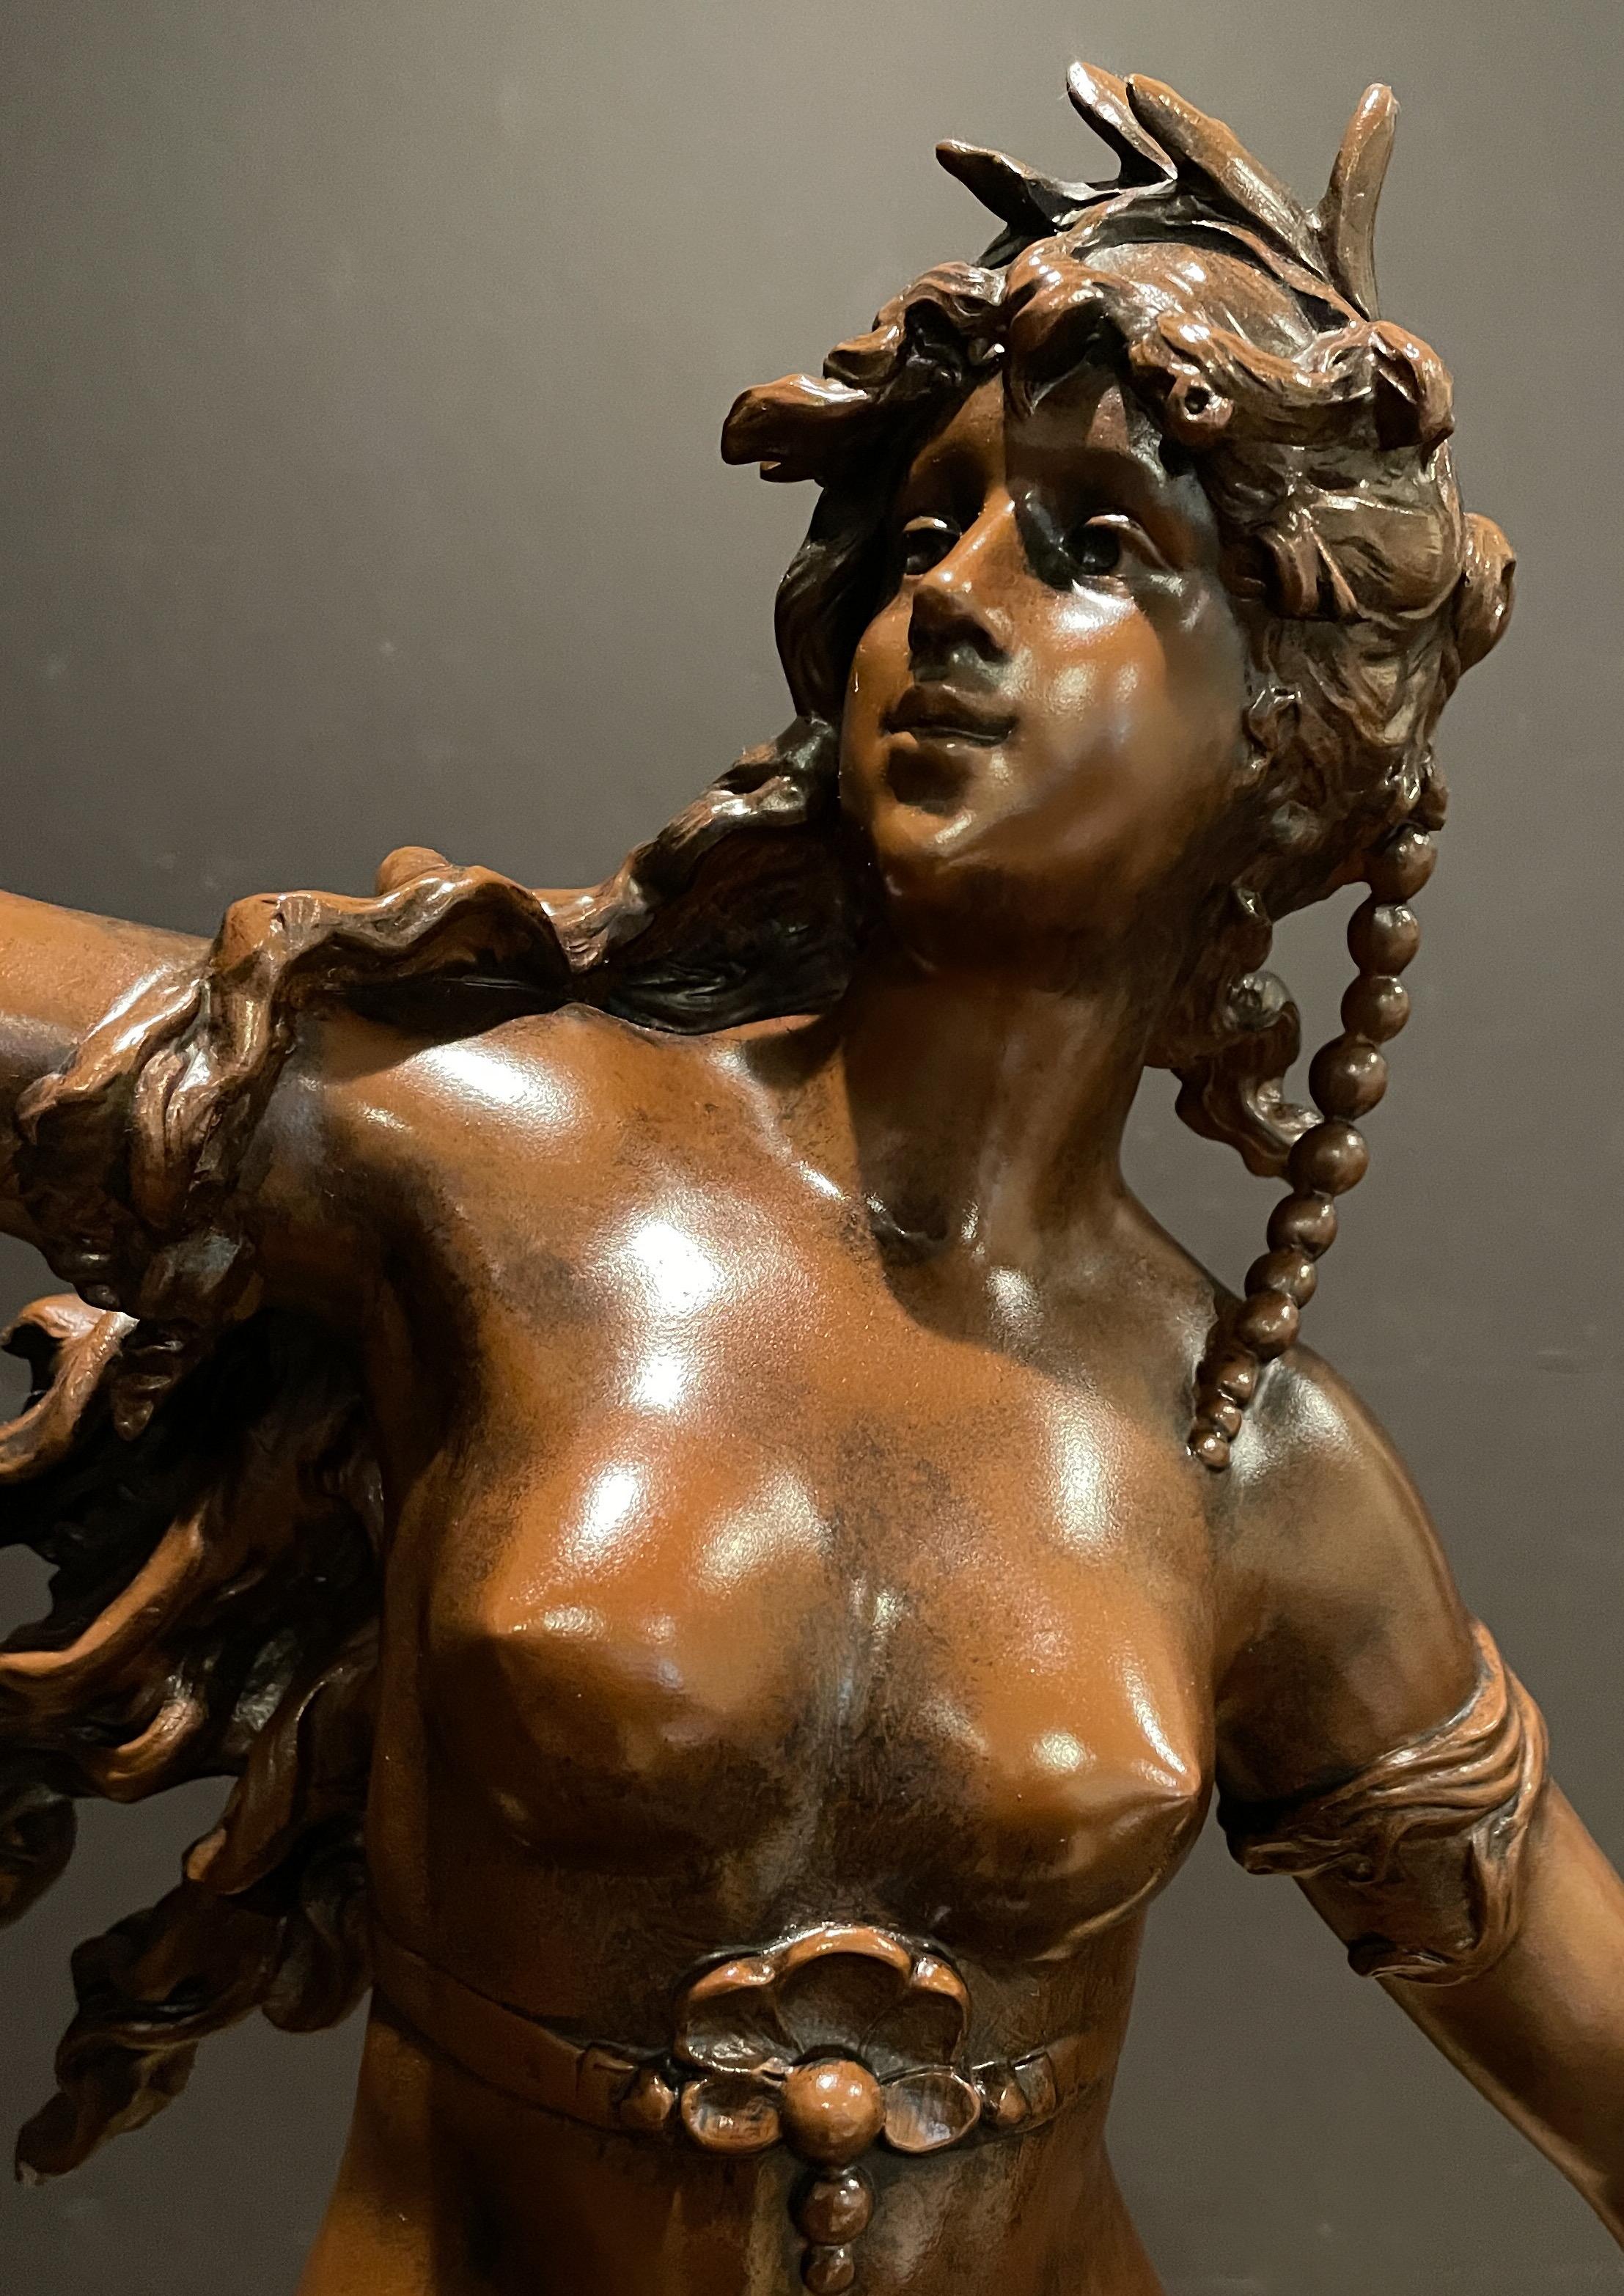 Grande sculpture française du XIXe siècle réalisée par L. et F. Moreau représentant une jeune fille tenant un bol de baies, assise sur des vagues en crête et un oiseau en vol. Fabriqué en spelter, ou métal en pot, avec une belle patine chaude et